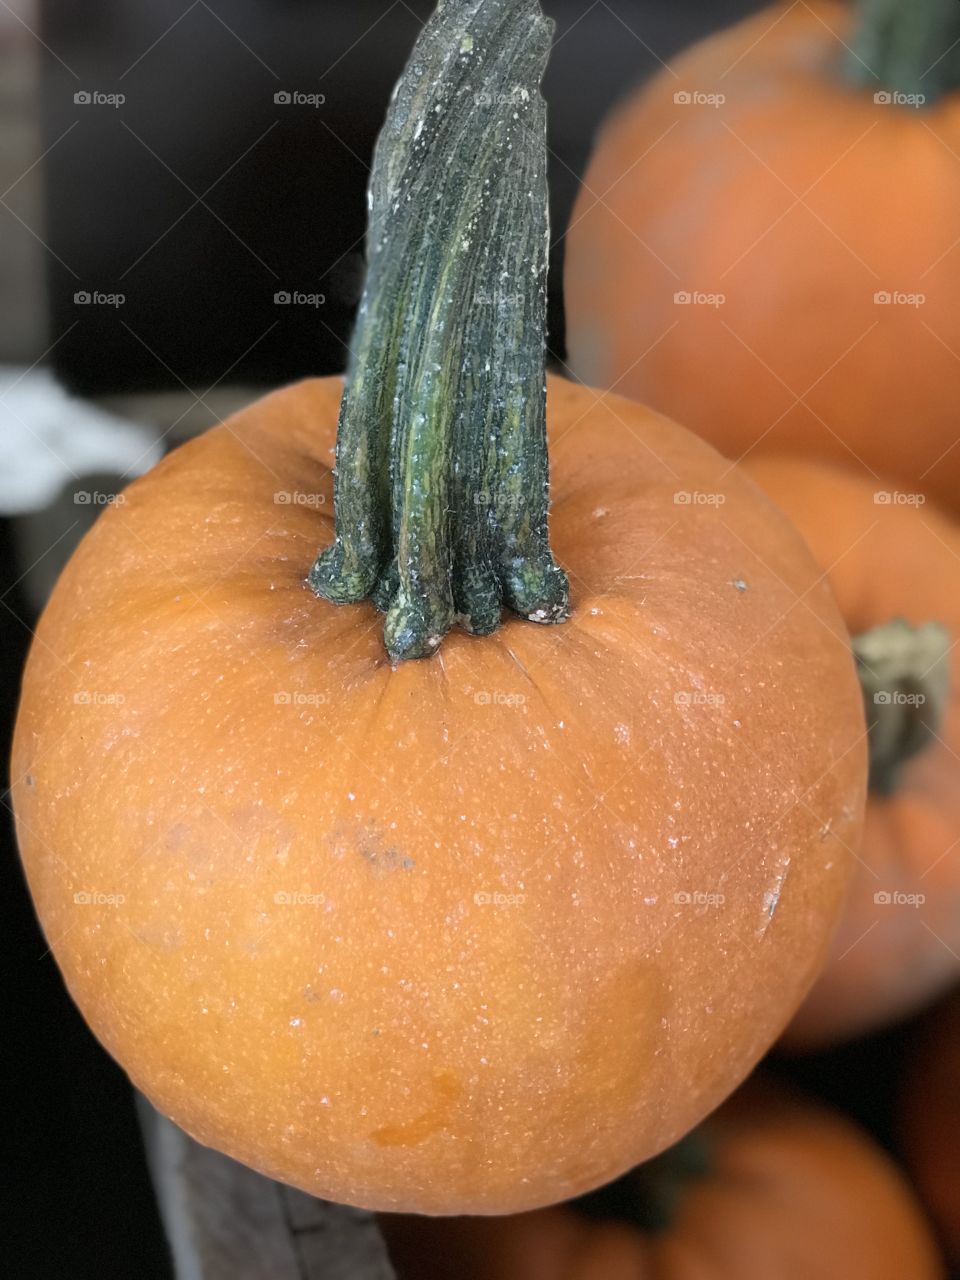 Autumn’s first pumpkin 